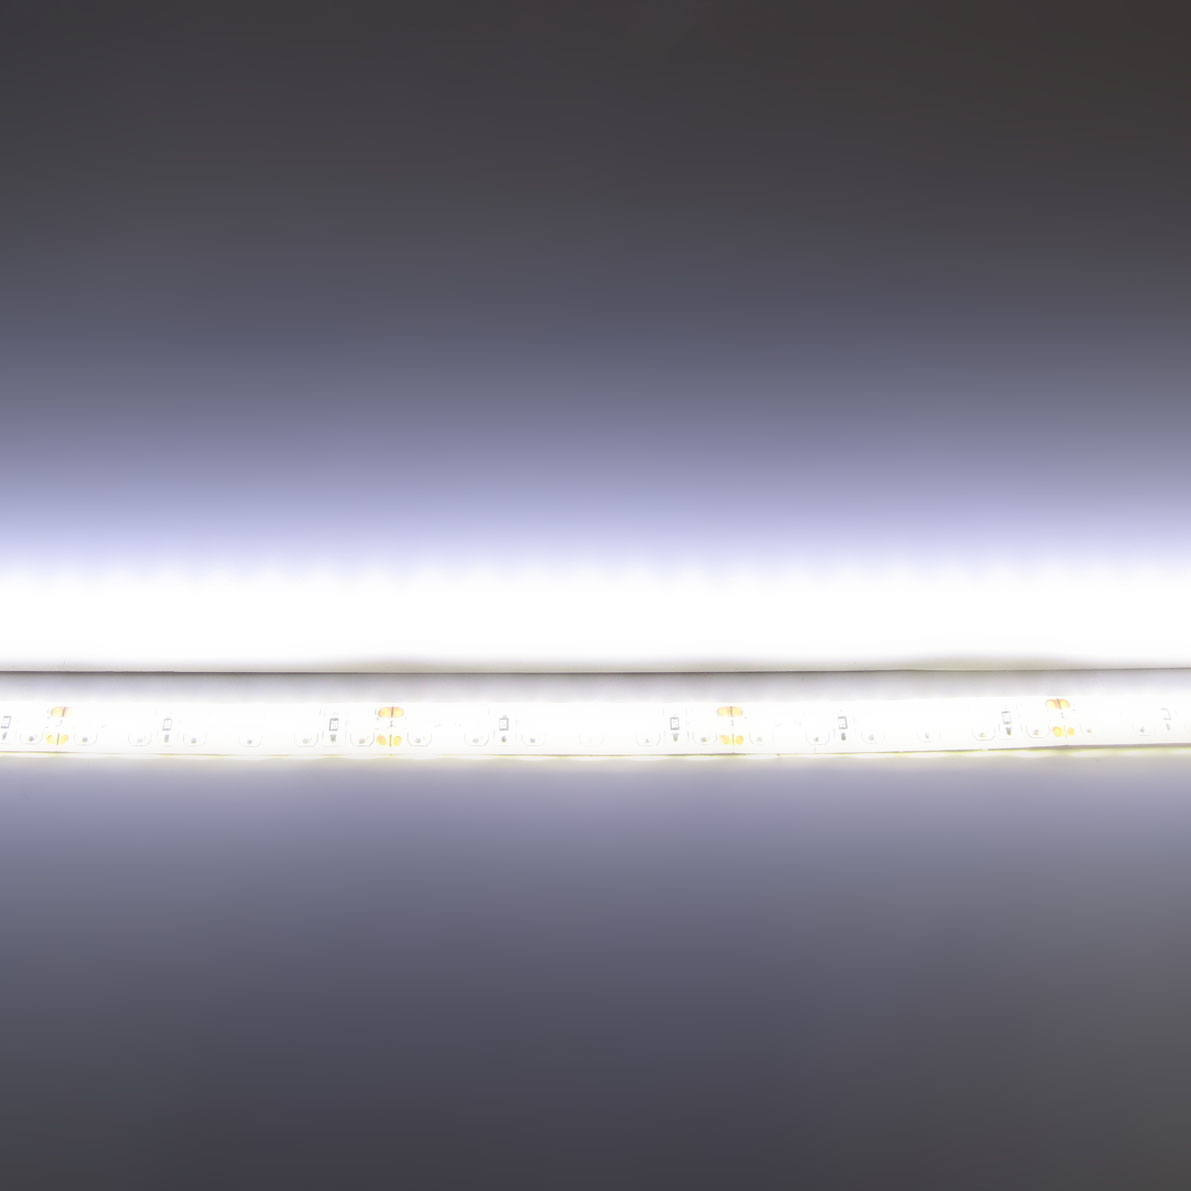 светодиодная лента standart pro class, 3528, 120 led/m, day white, 24v, ip65, артикул 54282